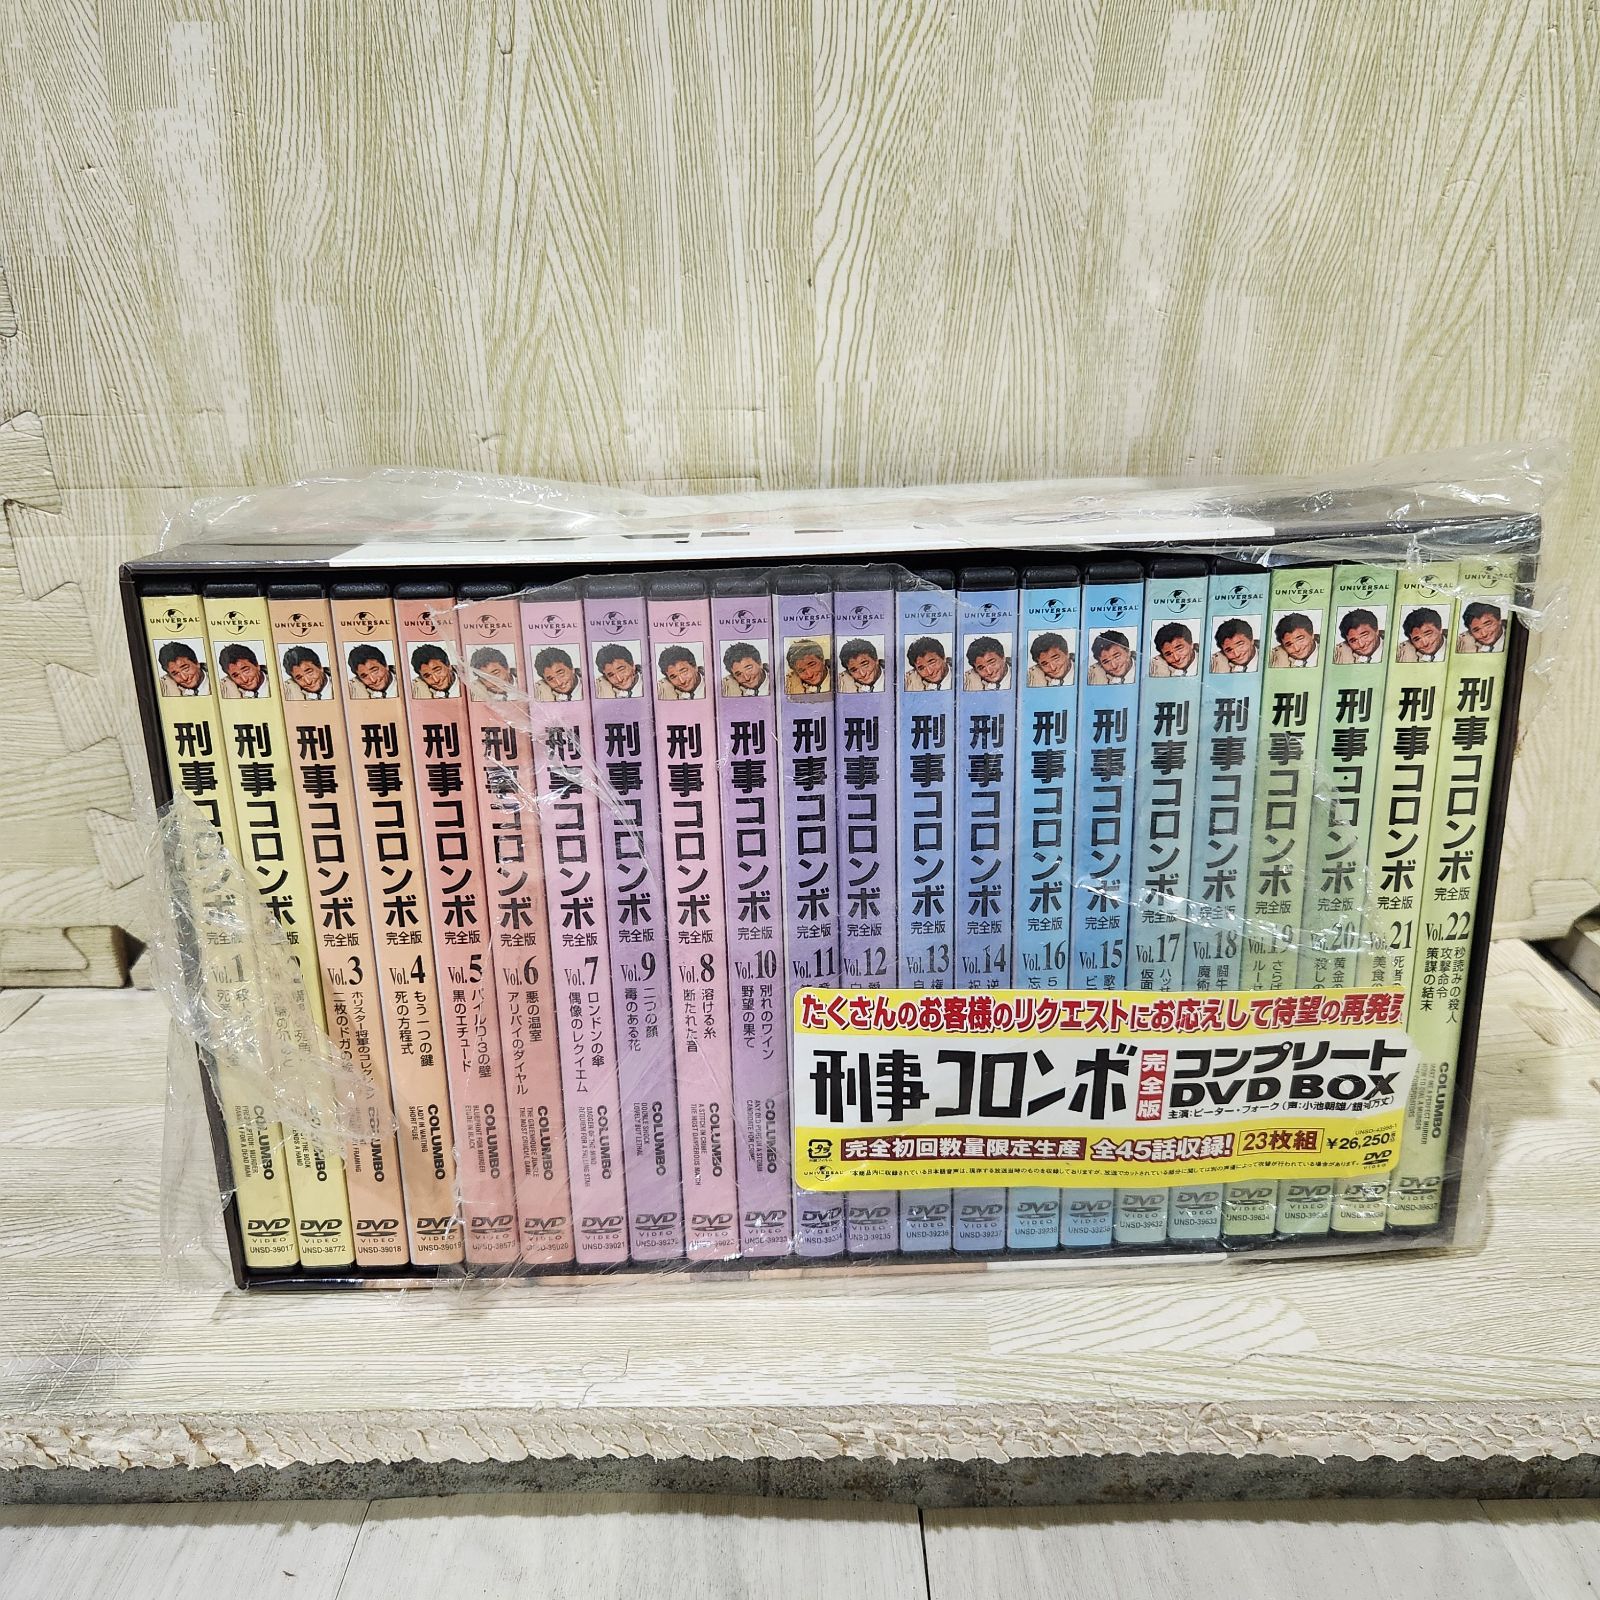 刑事コロンボ完全版 コンプリート DVD-BOX〈23枚組〉 - メルカリ